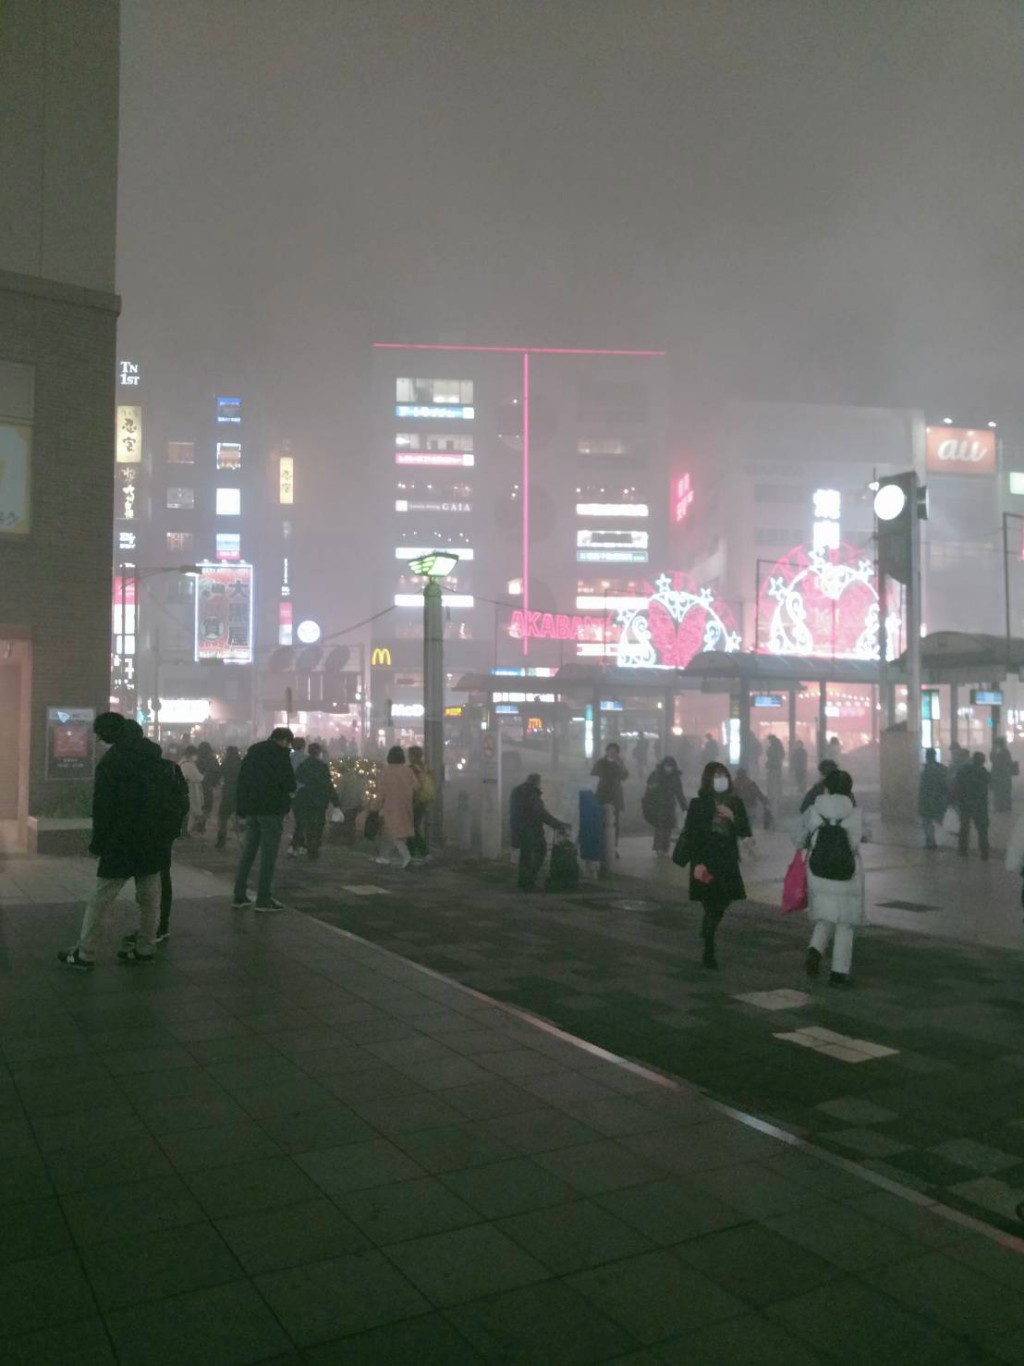  东京JR赤羽车站附近商店区大火。( のん@明るい未来计画中@X)